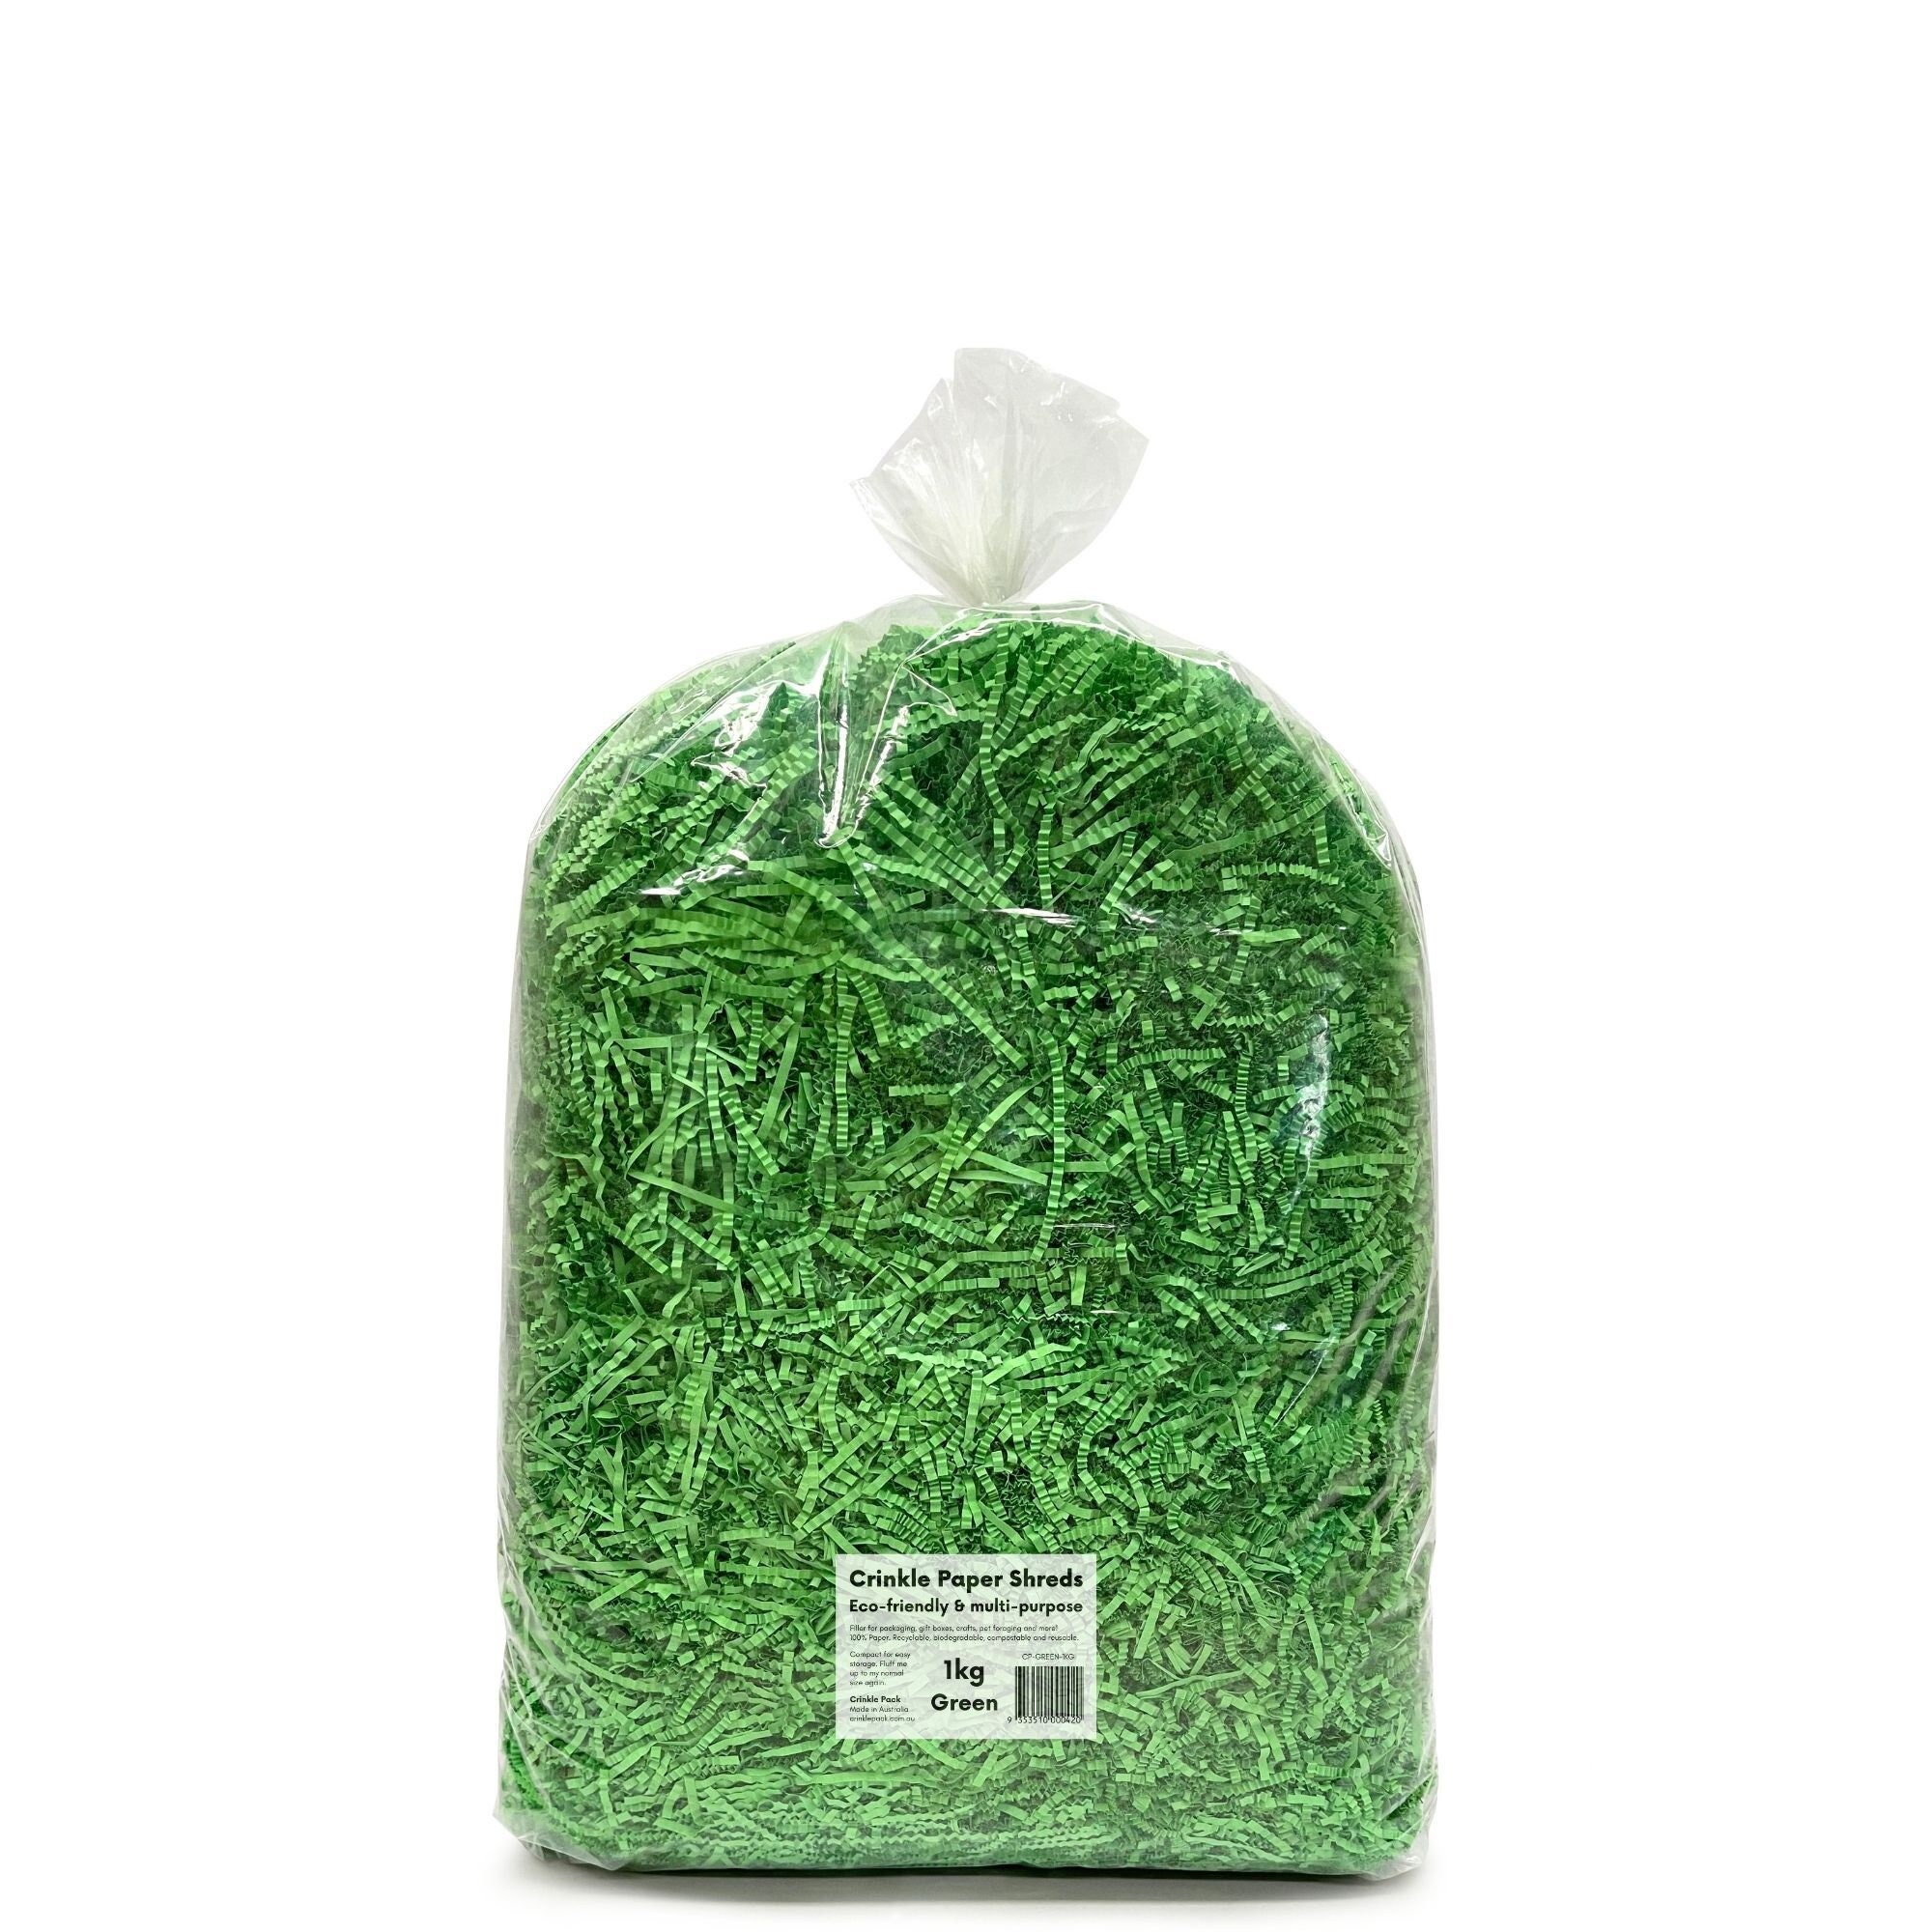 24 - 1.25oz Bags of eco grass®